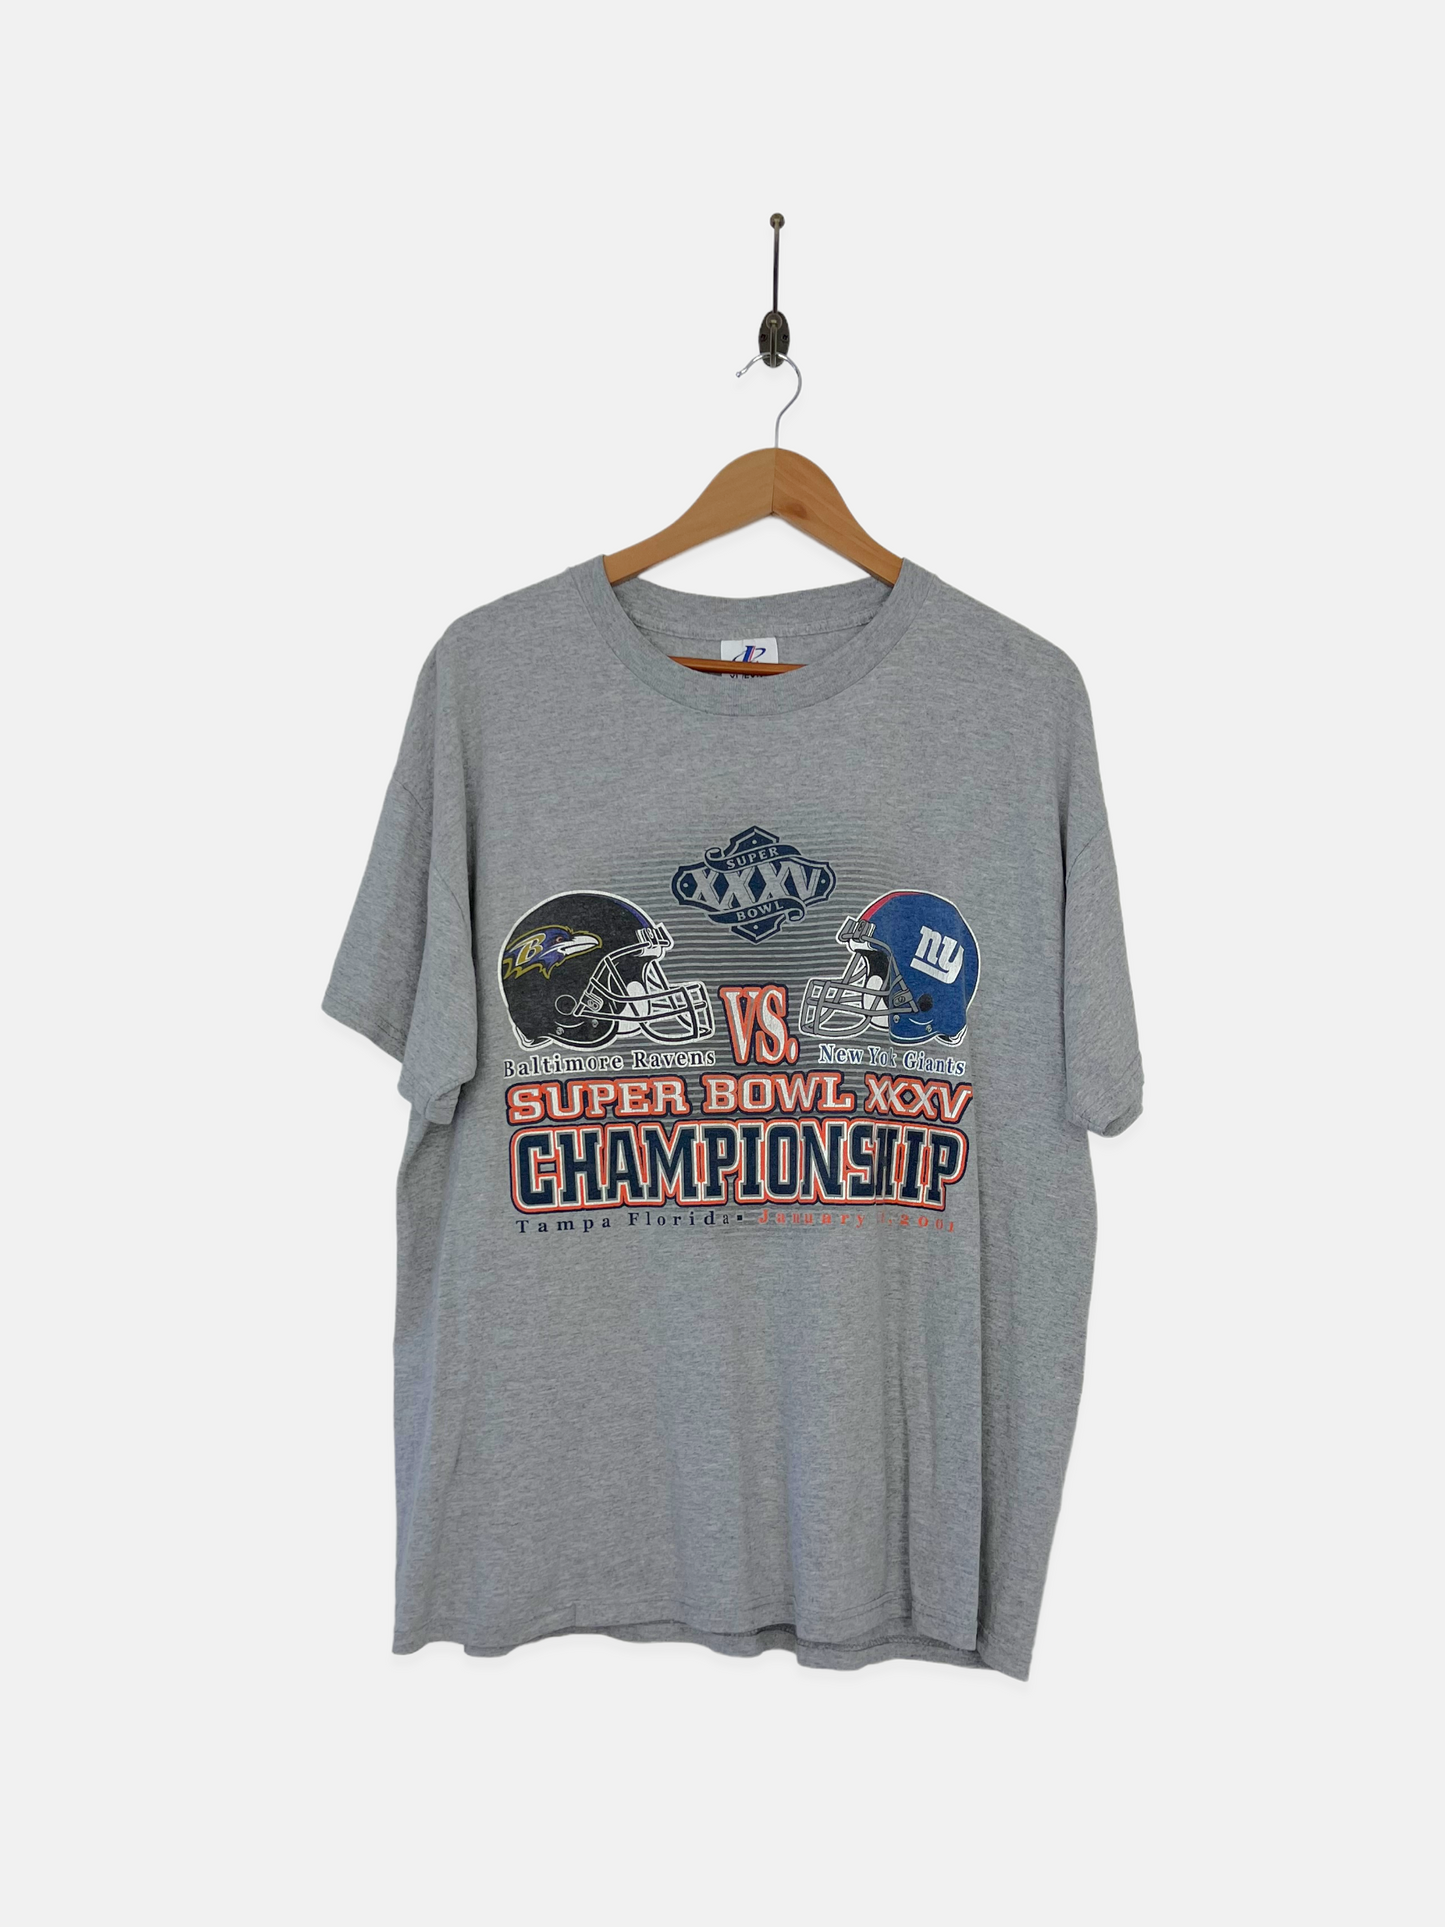 Ravens vs Giants NFL Superbowl Vintage T-Shirt Size M-L